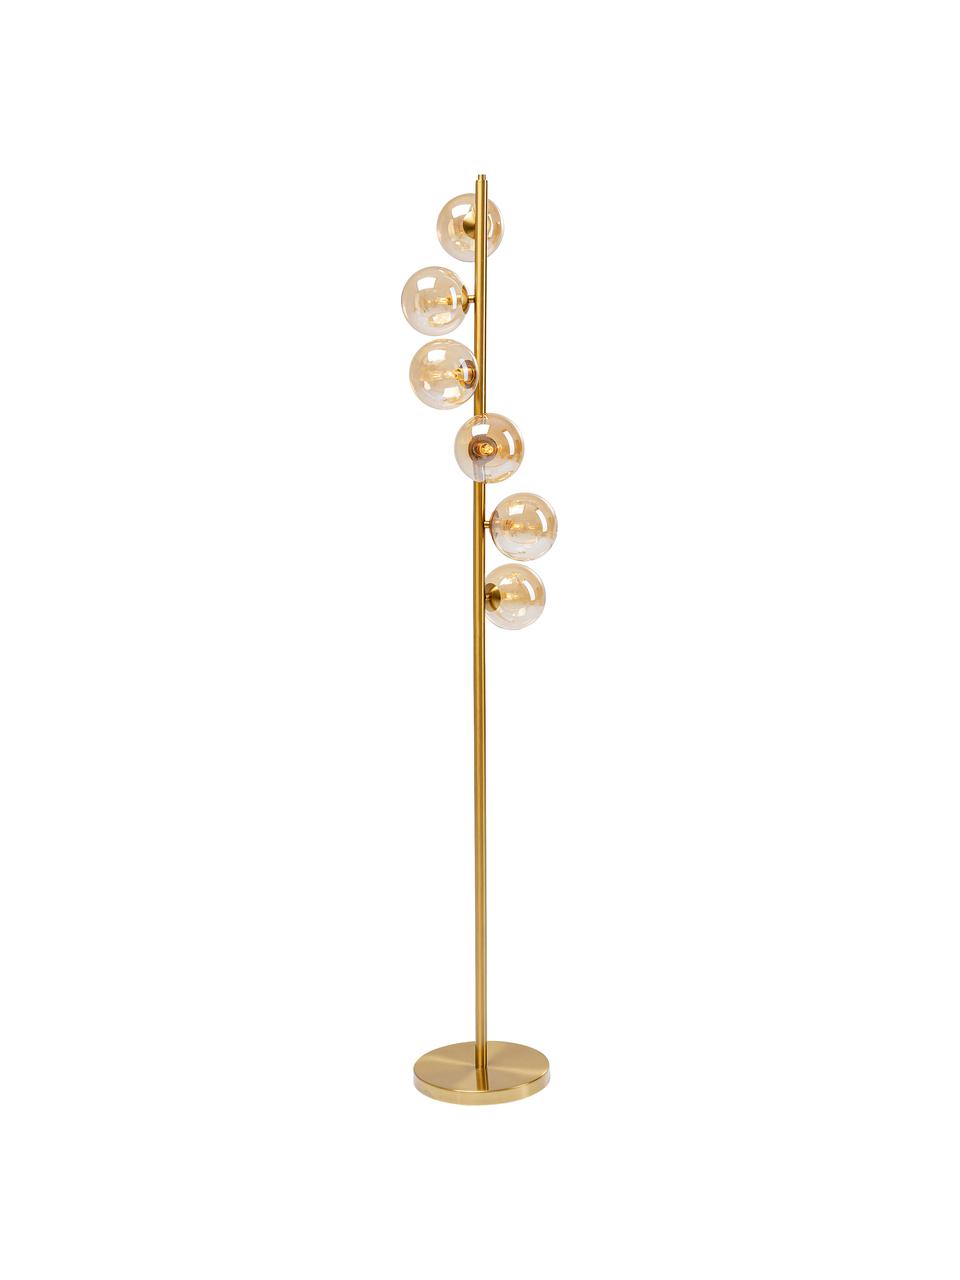 Stehlampe Scala in Gold, Lampenschirm: Glas, Lampenfuß: Stahl, beschichtet, Goldfarben, Ø 28 x H 160 cm